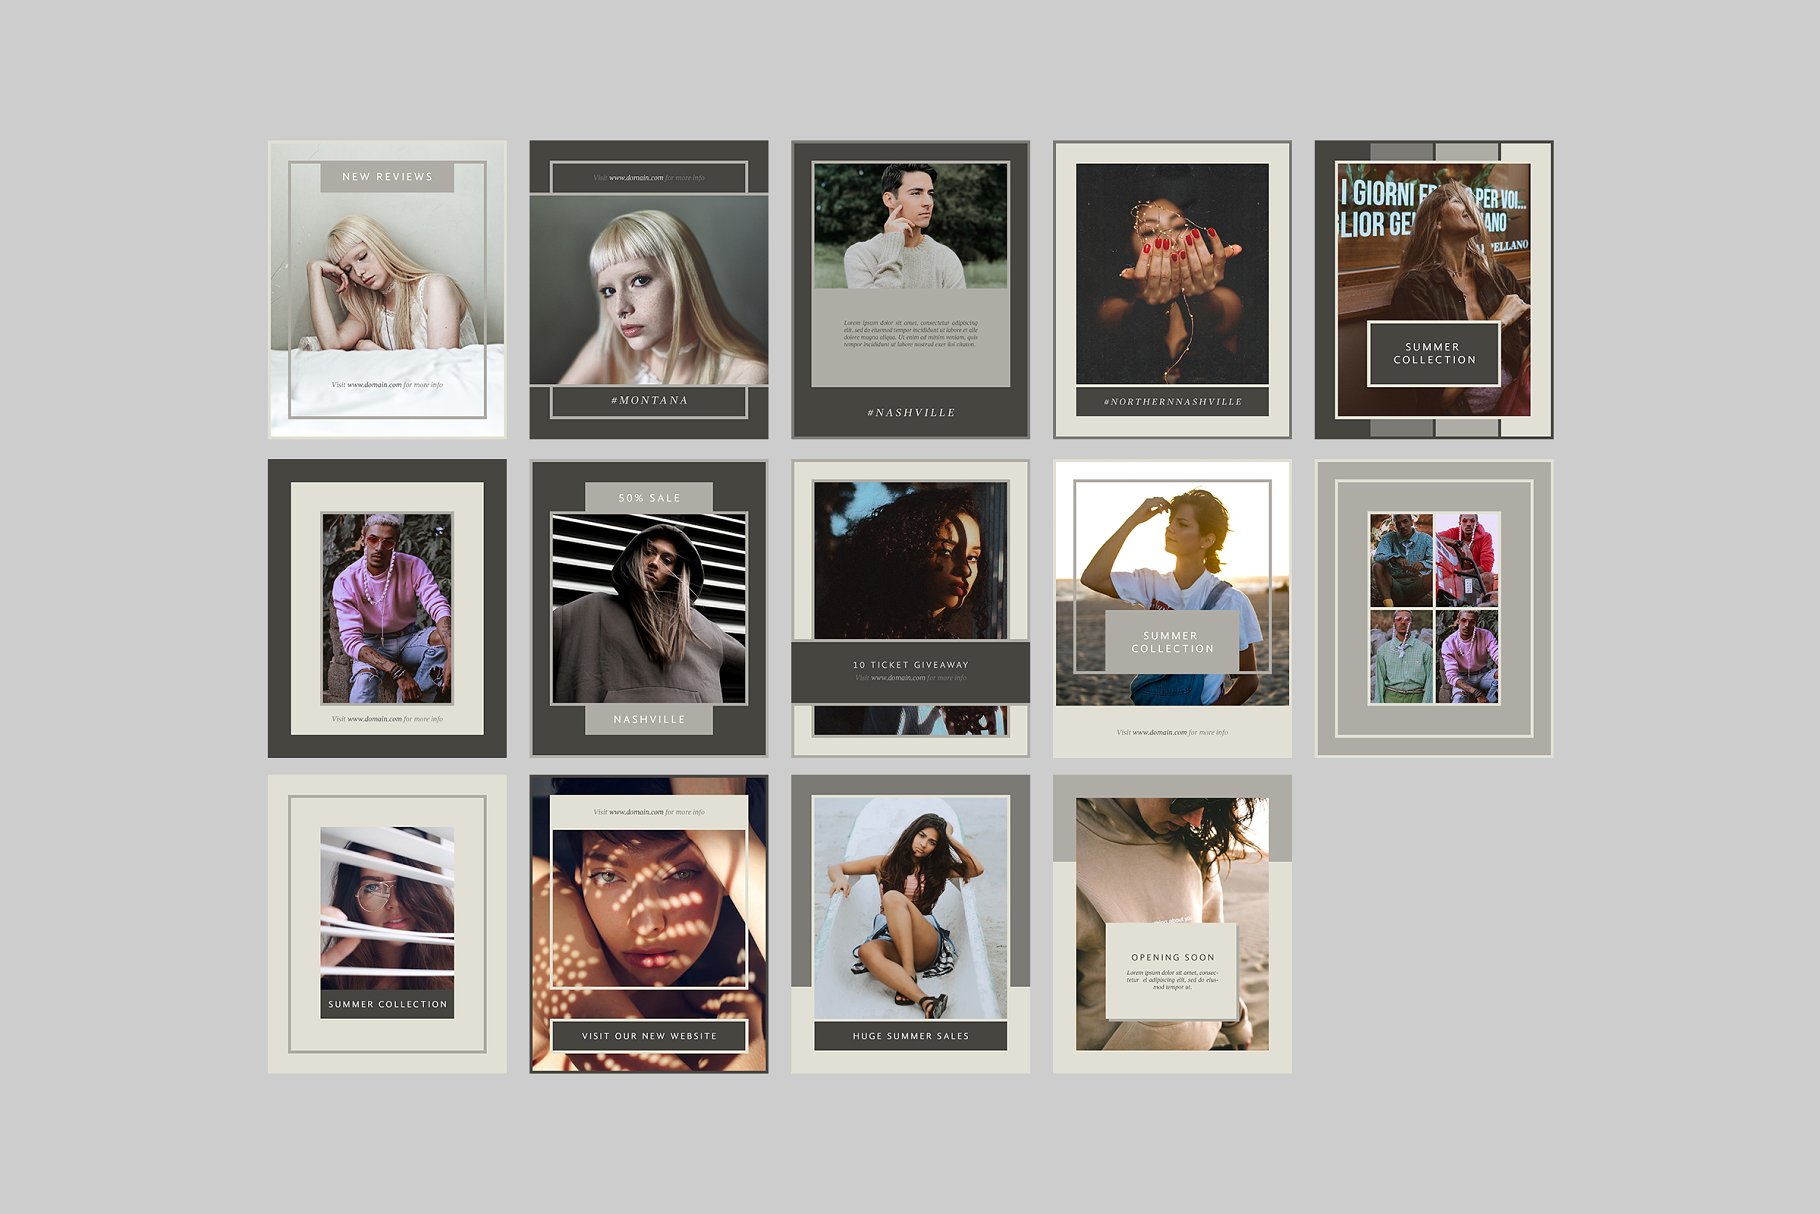 时尚模特摄影主题社交媒体贴图模板非凡图库精选 Nashville Social Media Templates插图(7)